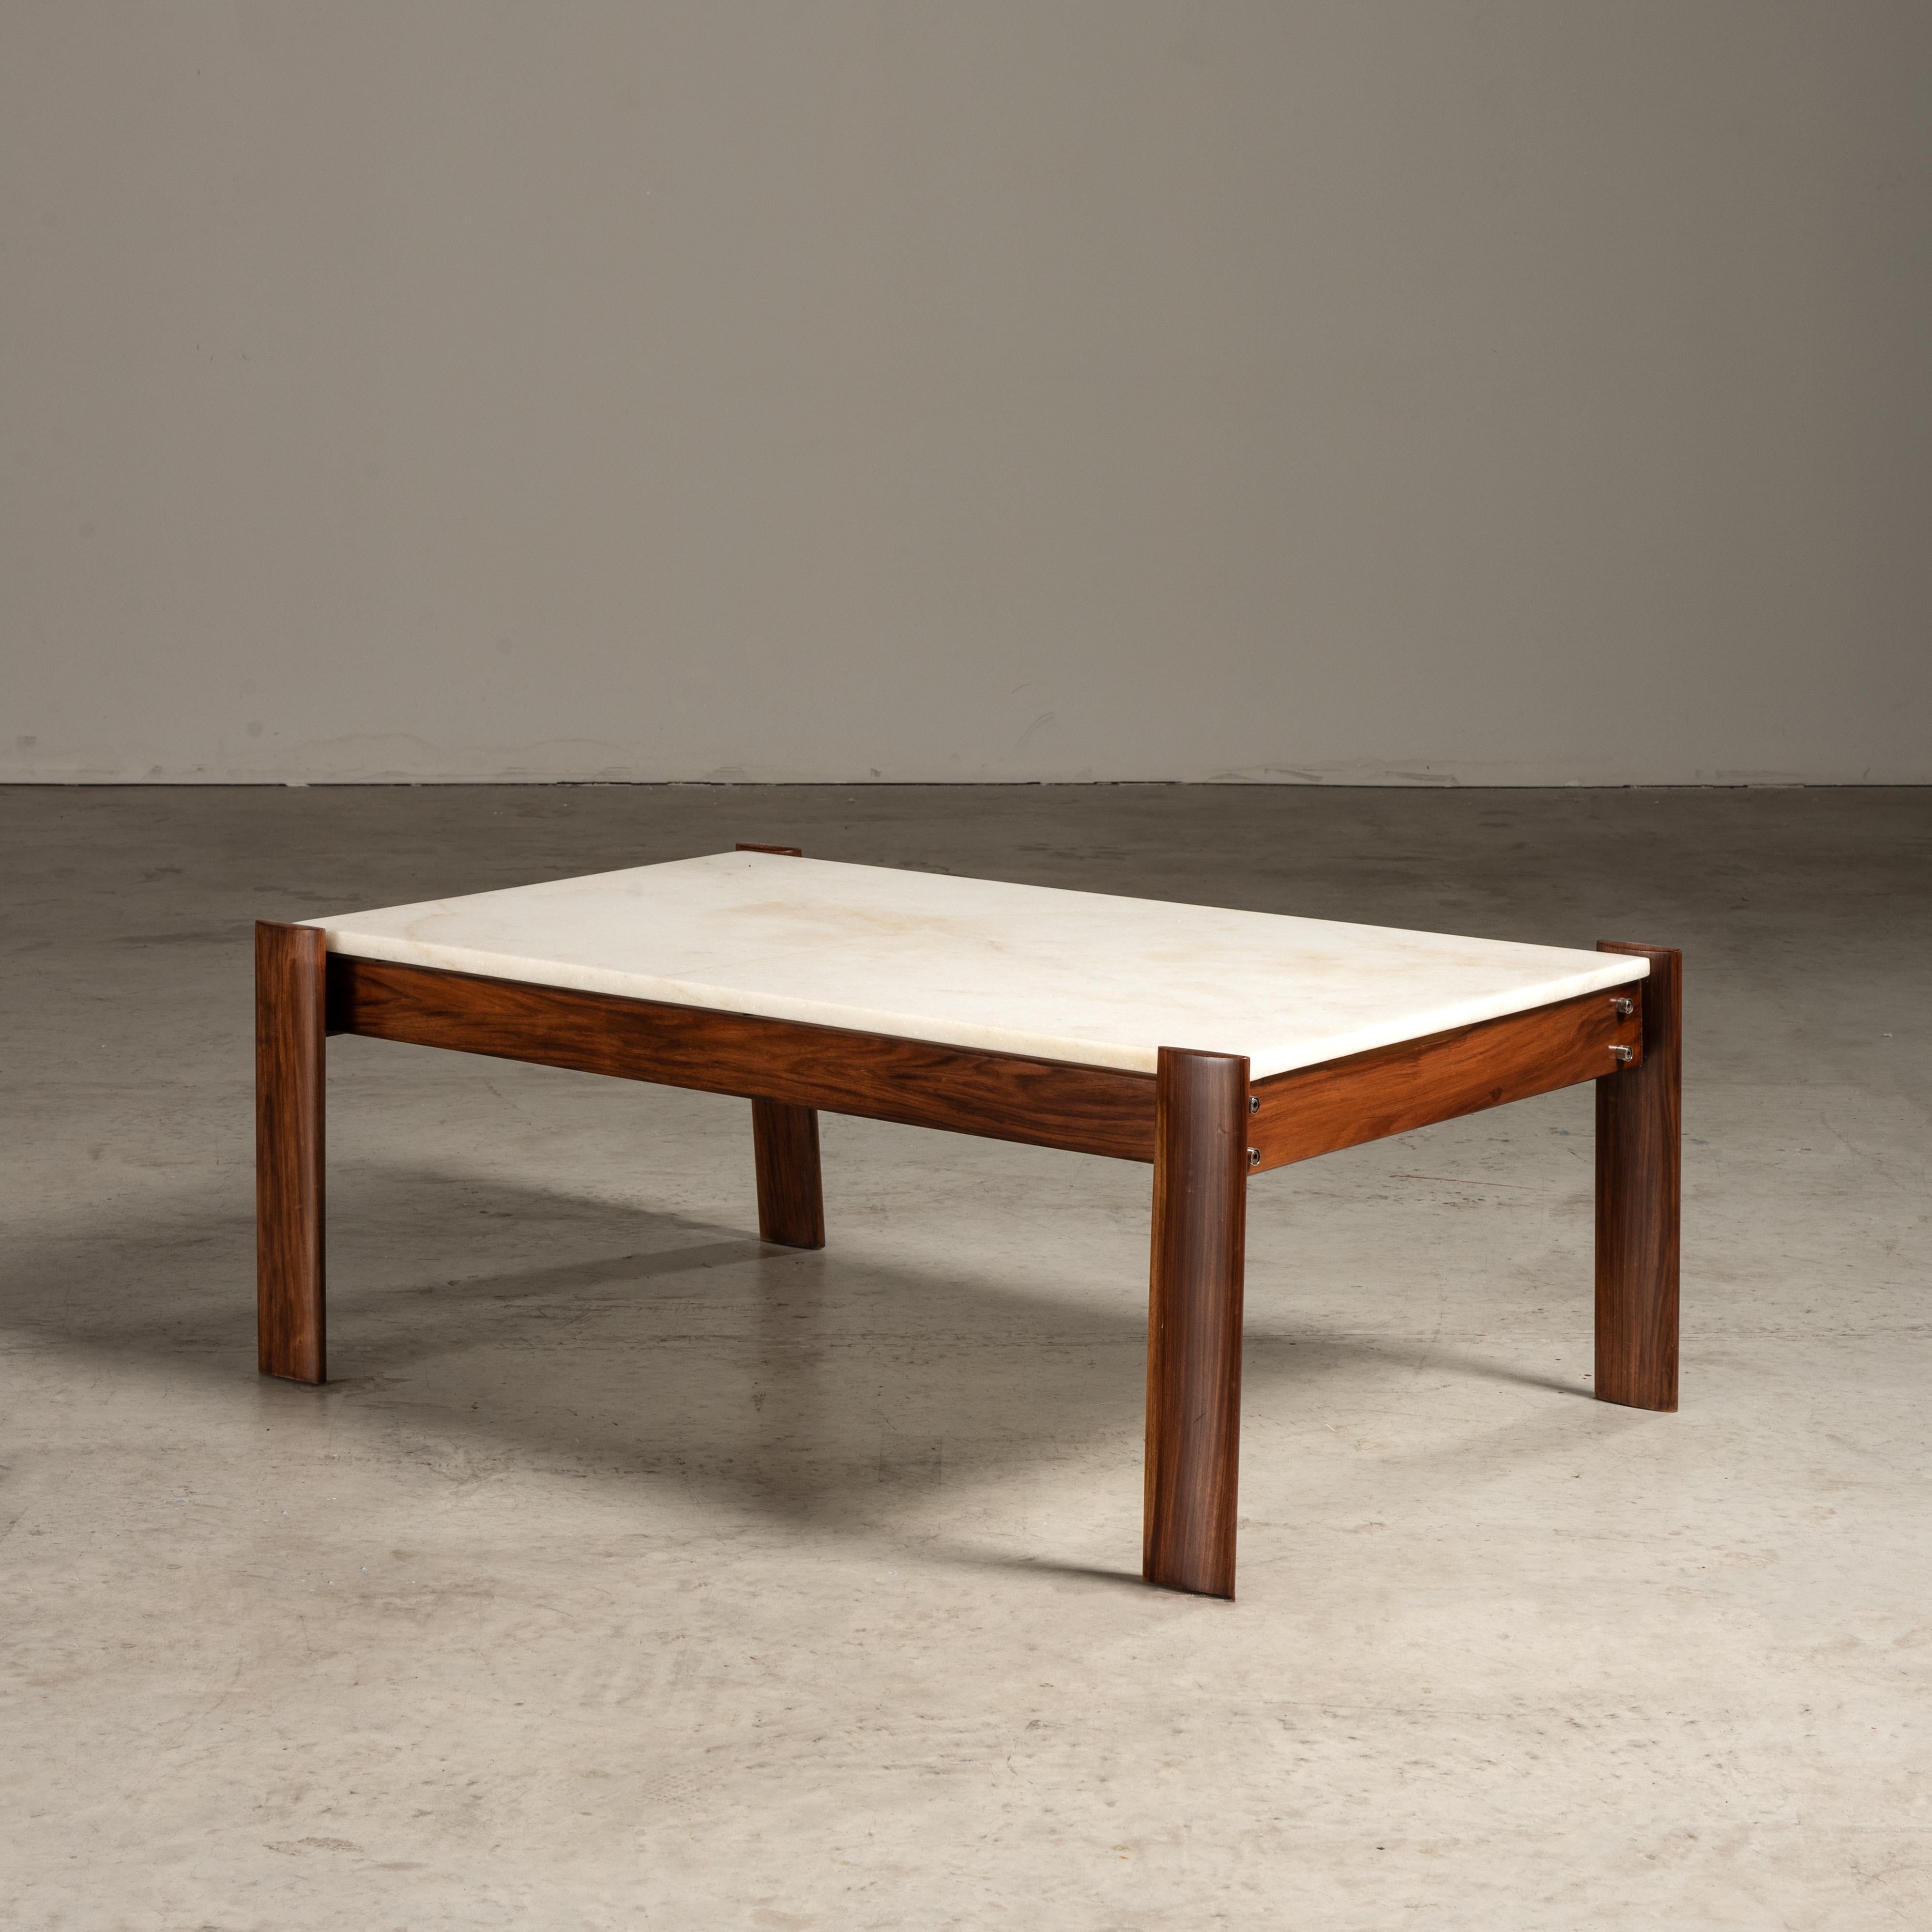 La table basse MP-51, conçue par Percival Lafer, est une pièce incontournable qui illustre l'élégance et l'attrait intemporel du design moderne brésilien du milieu du siècle. Il illustre parfaitement l'engagement de Lafer à associer des matériaux